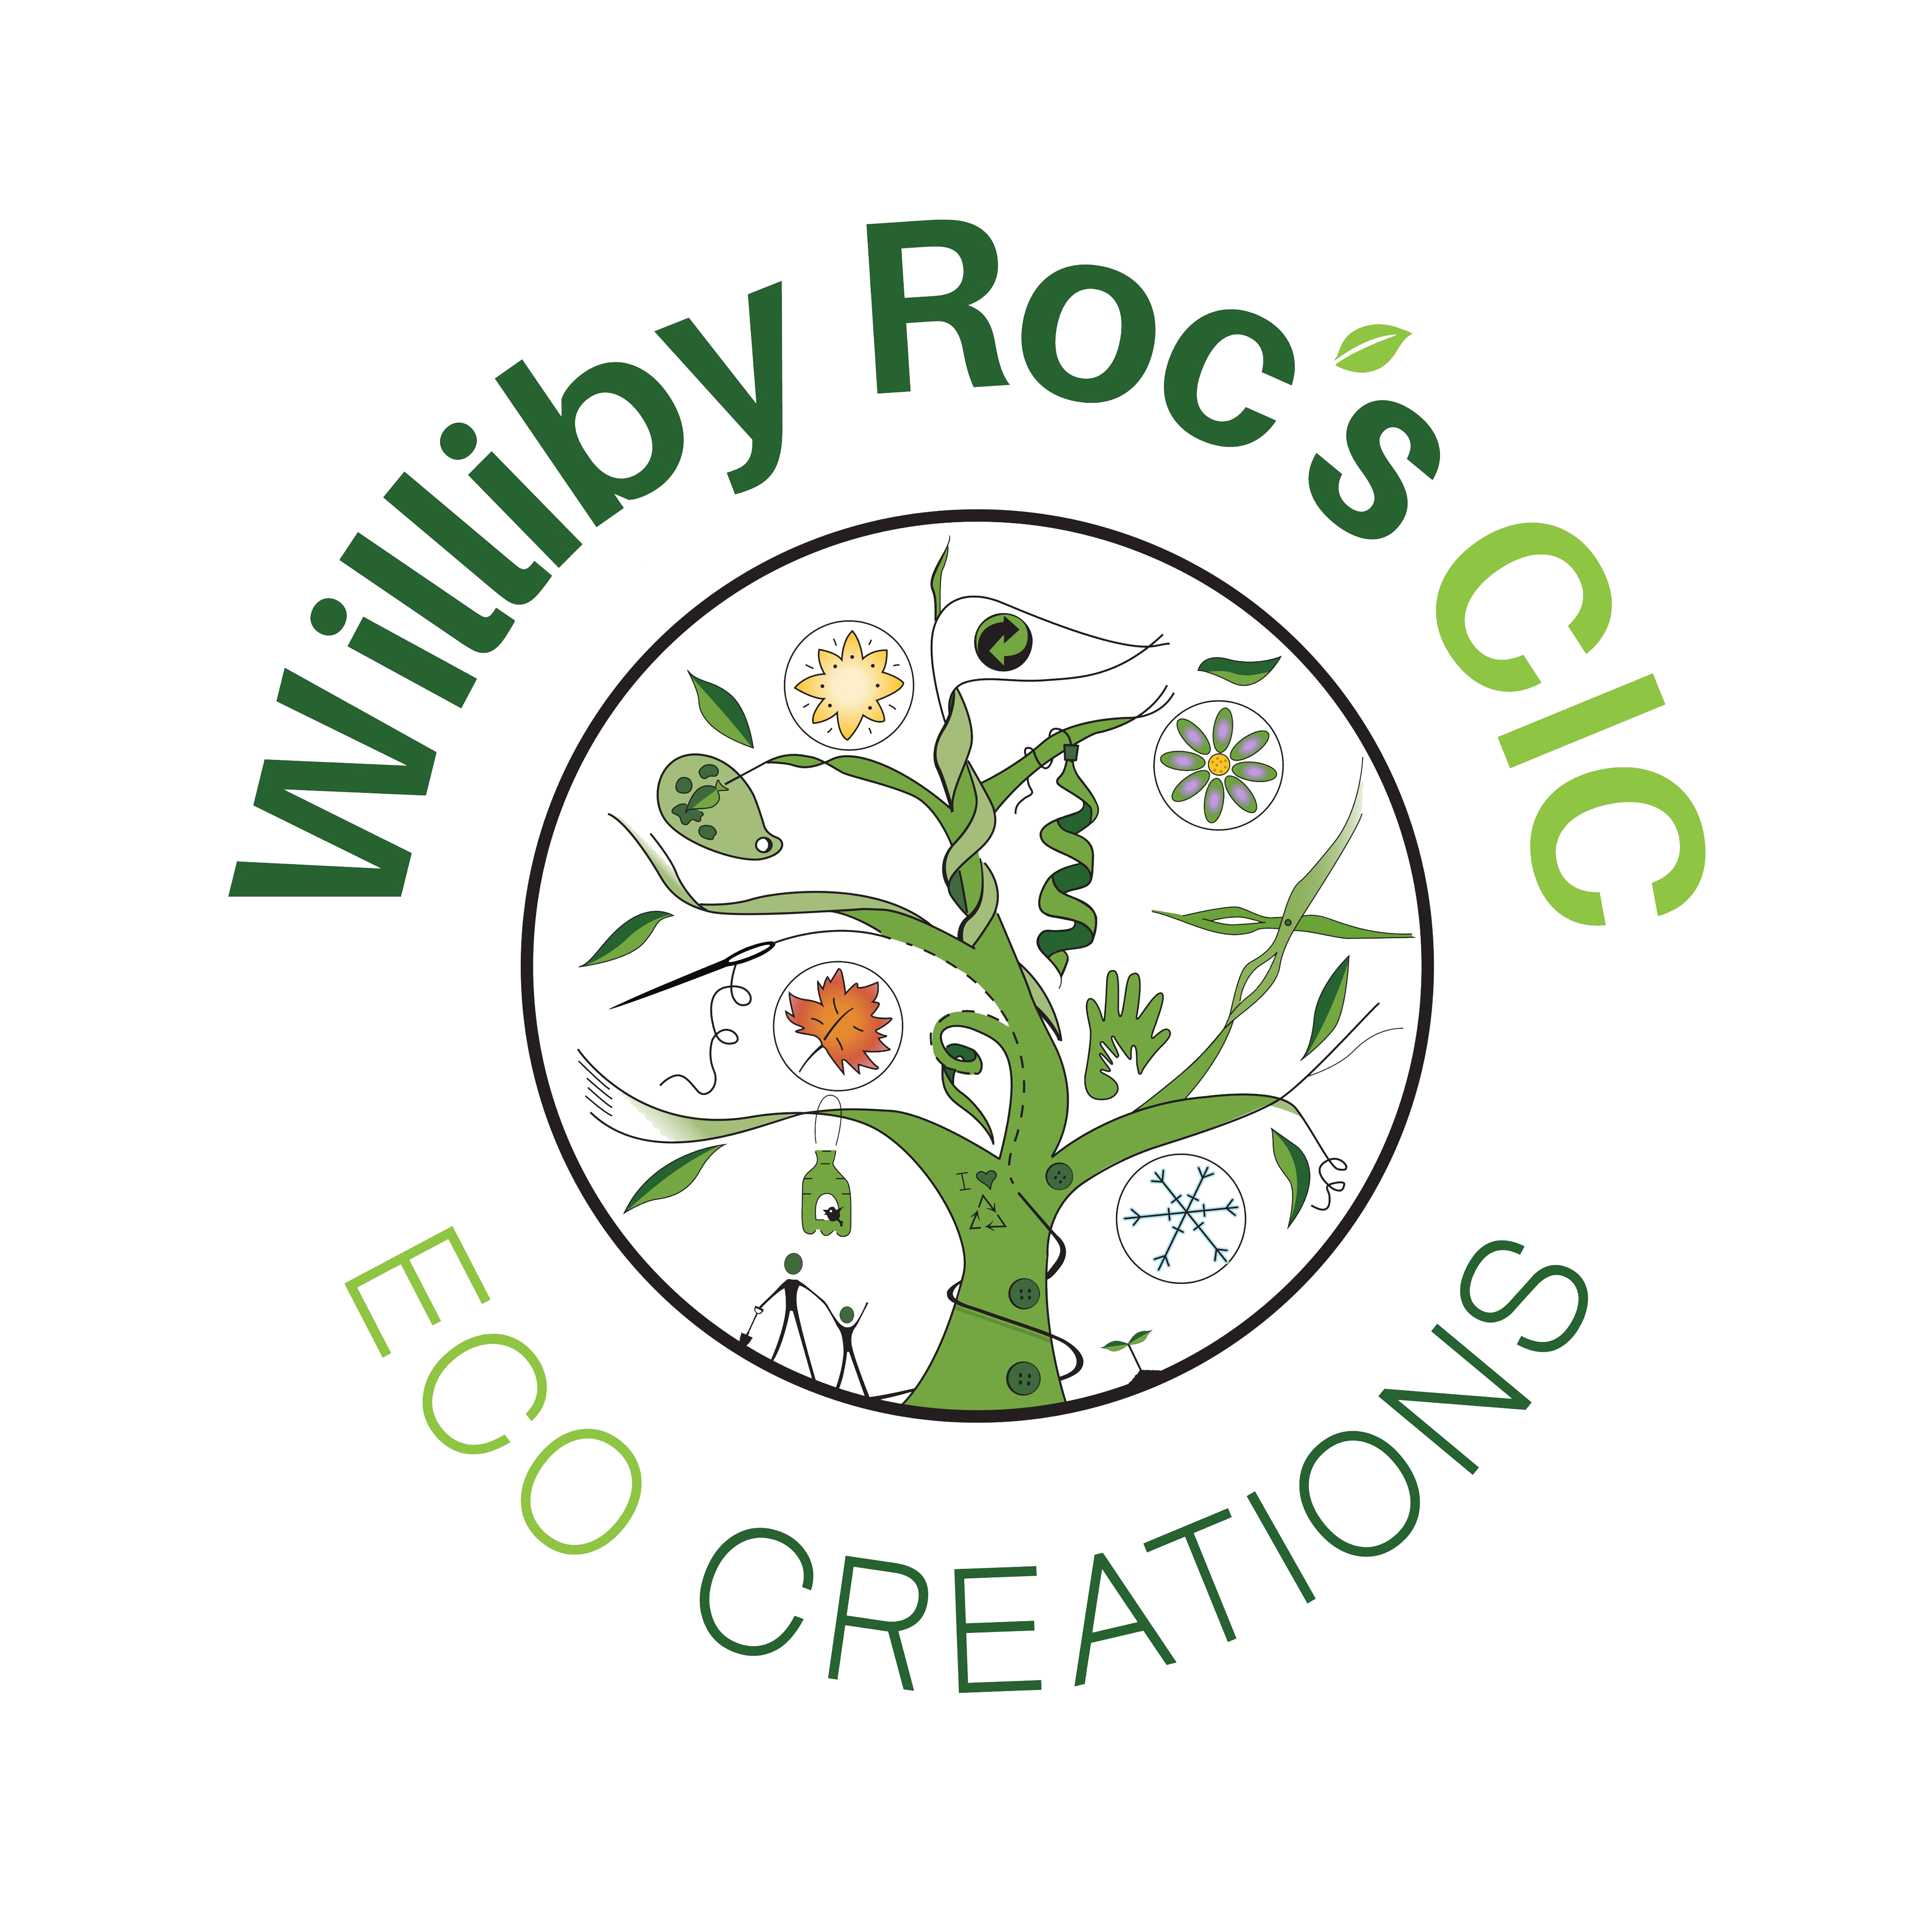 Williby Roc's CIC ECO Creations